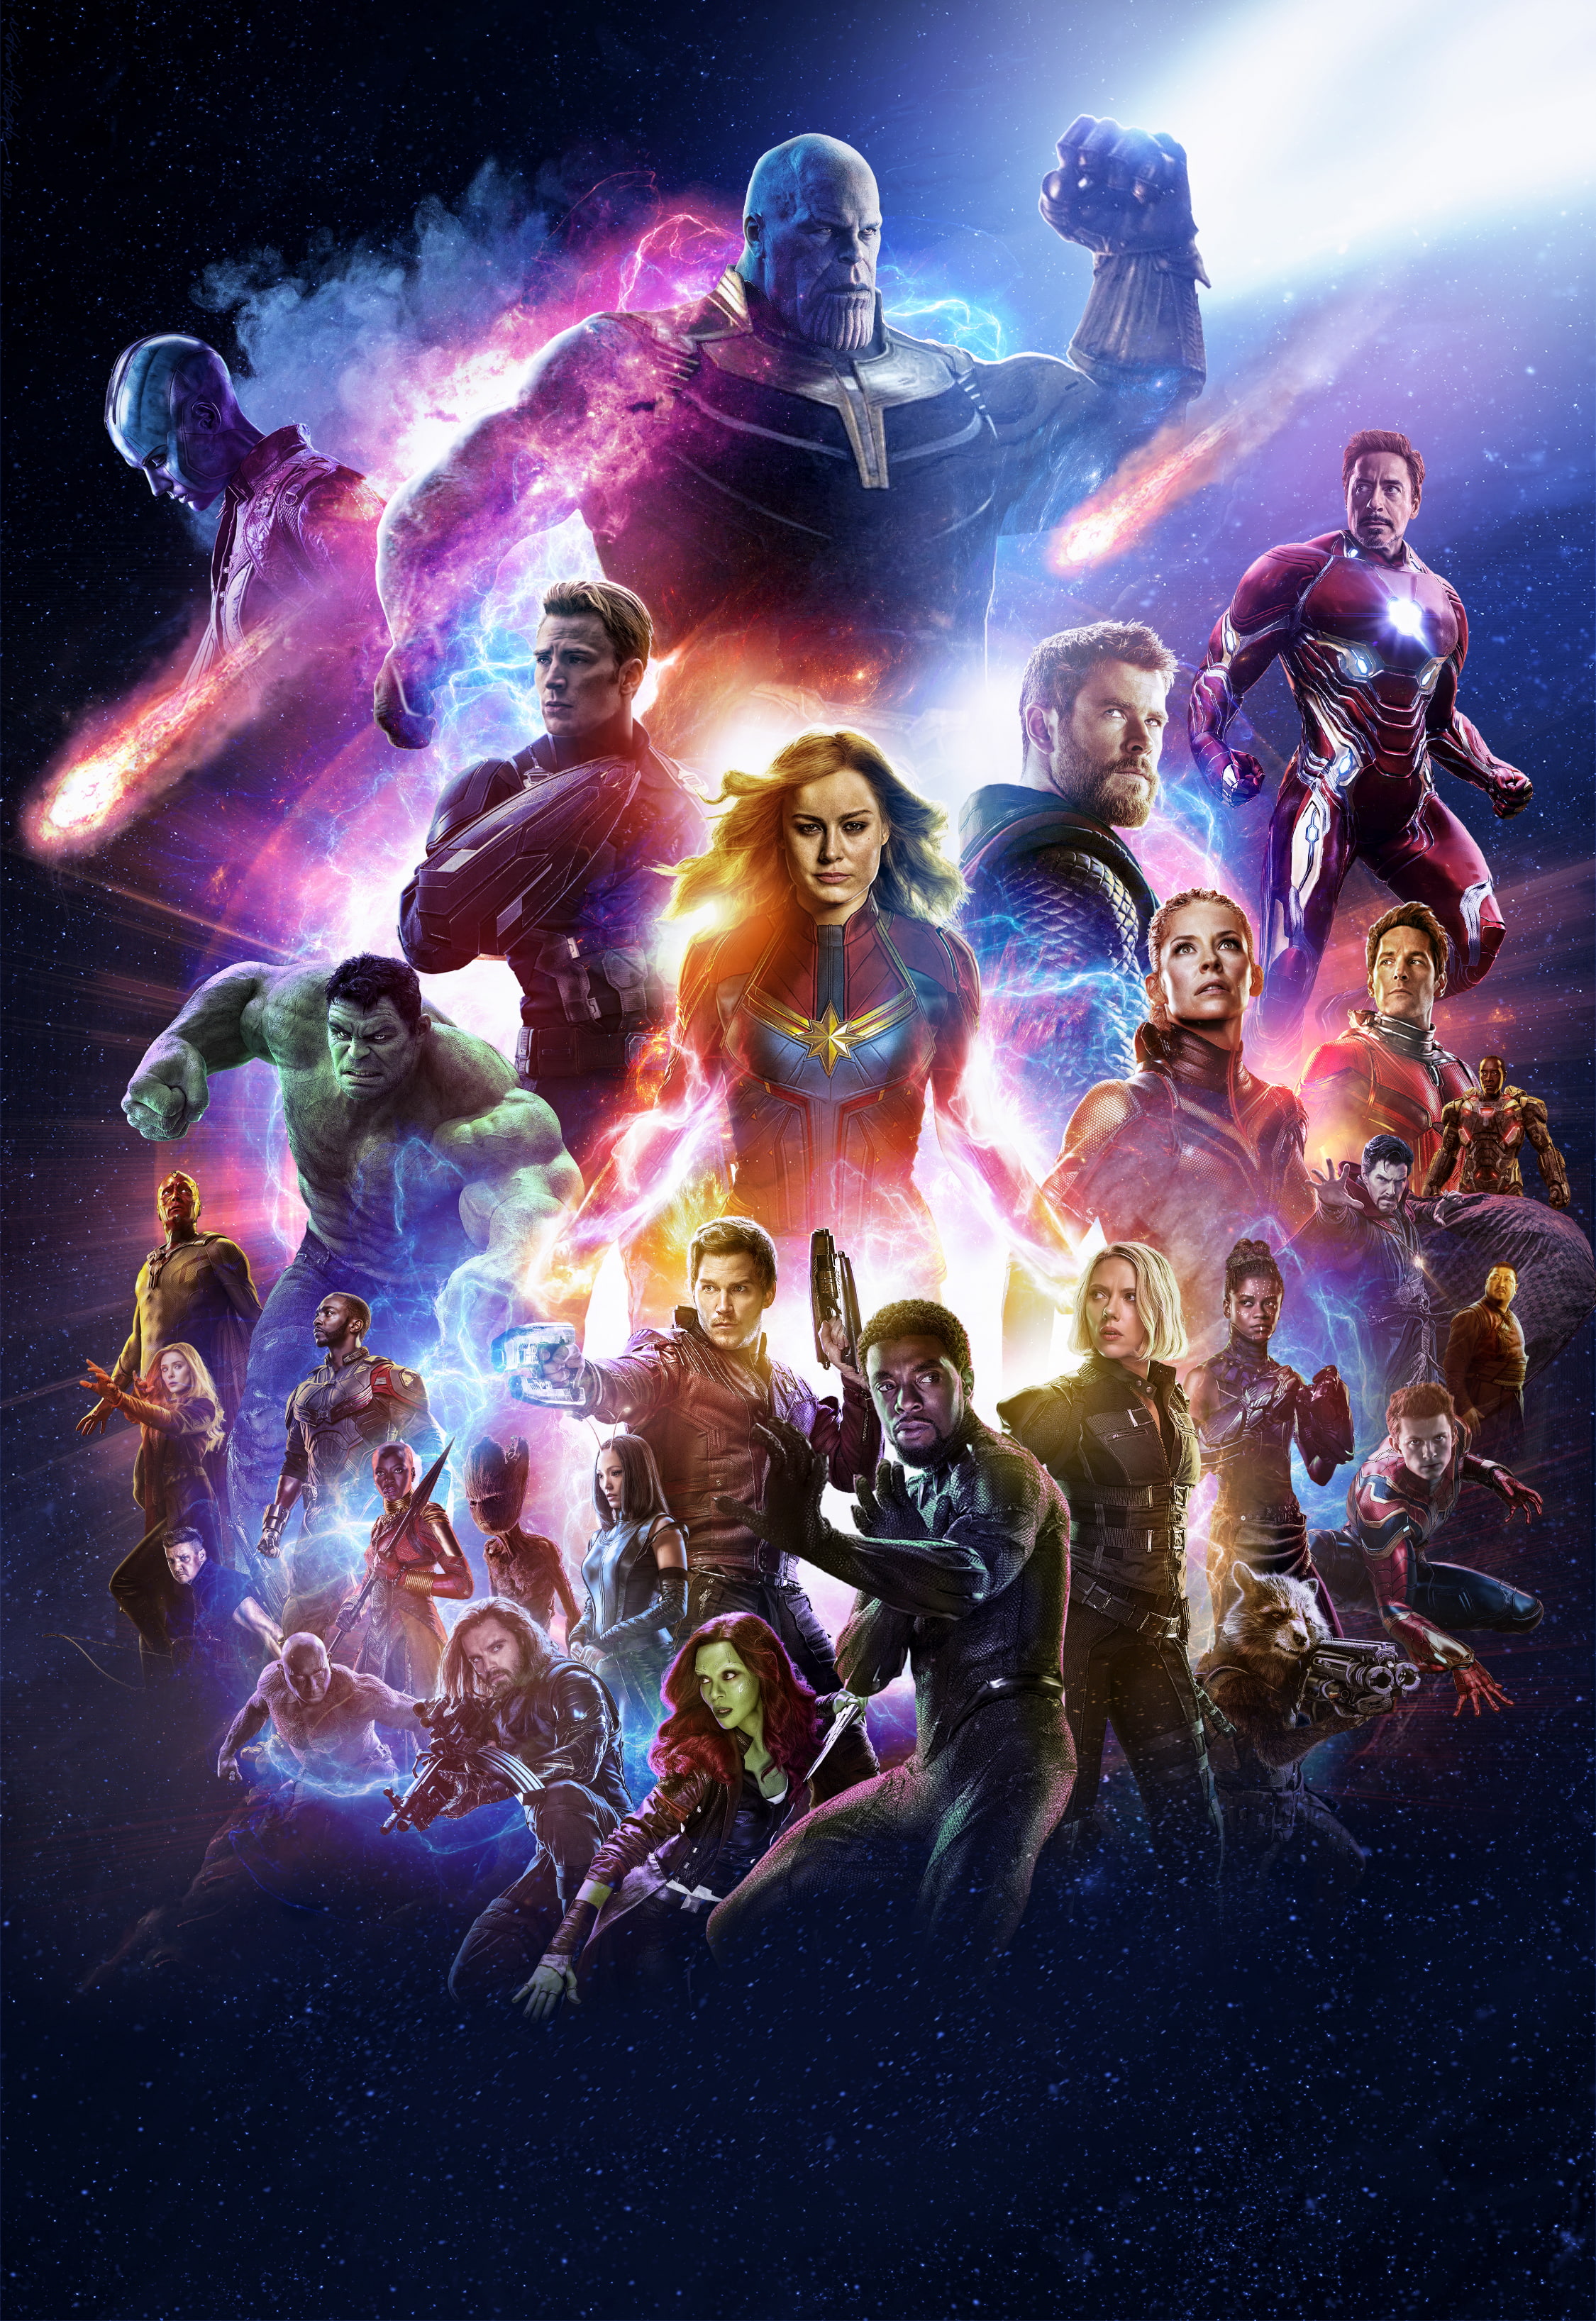 Marvel Super Heroes, Avengers 4, Captain Marvel, Iron Man, Spider-Man